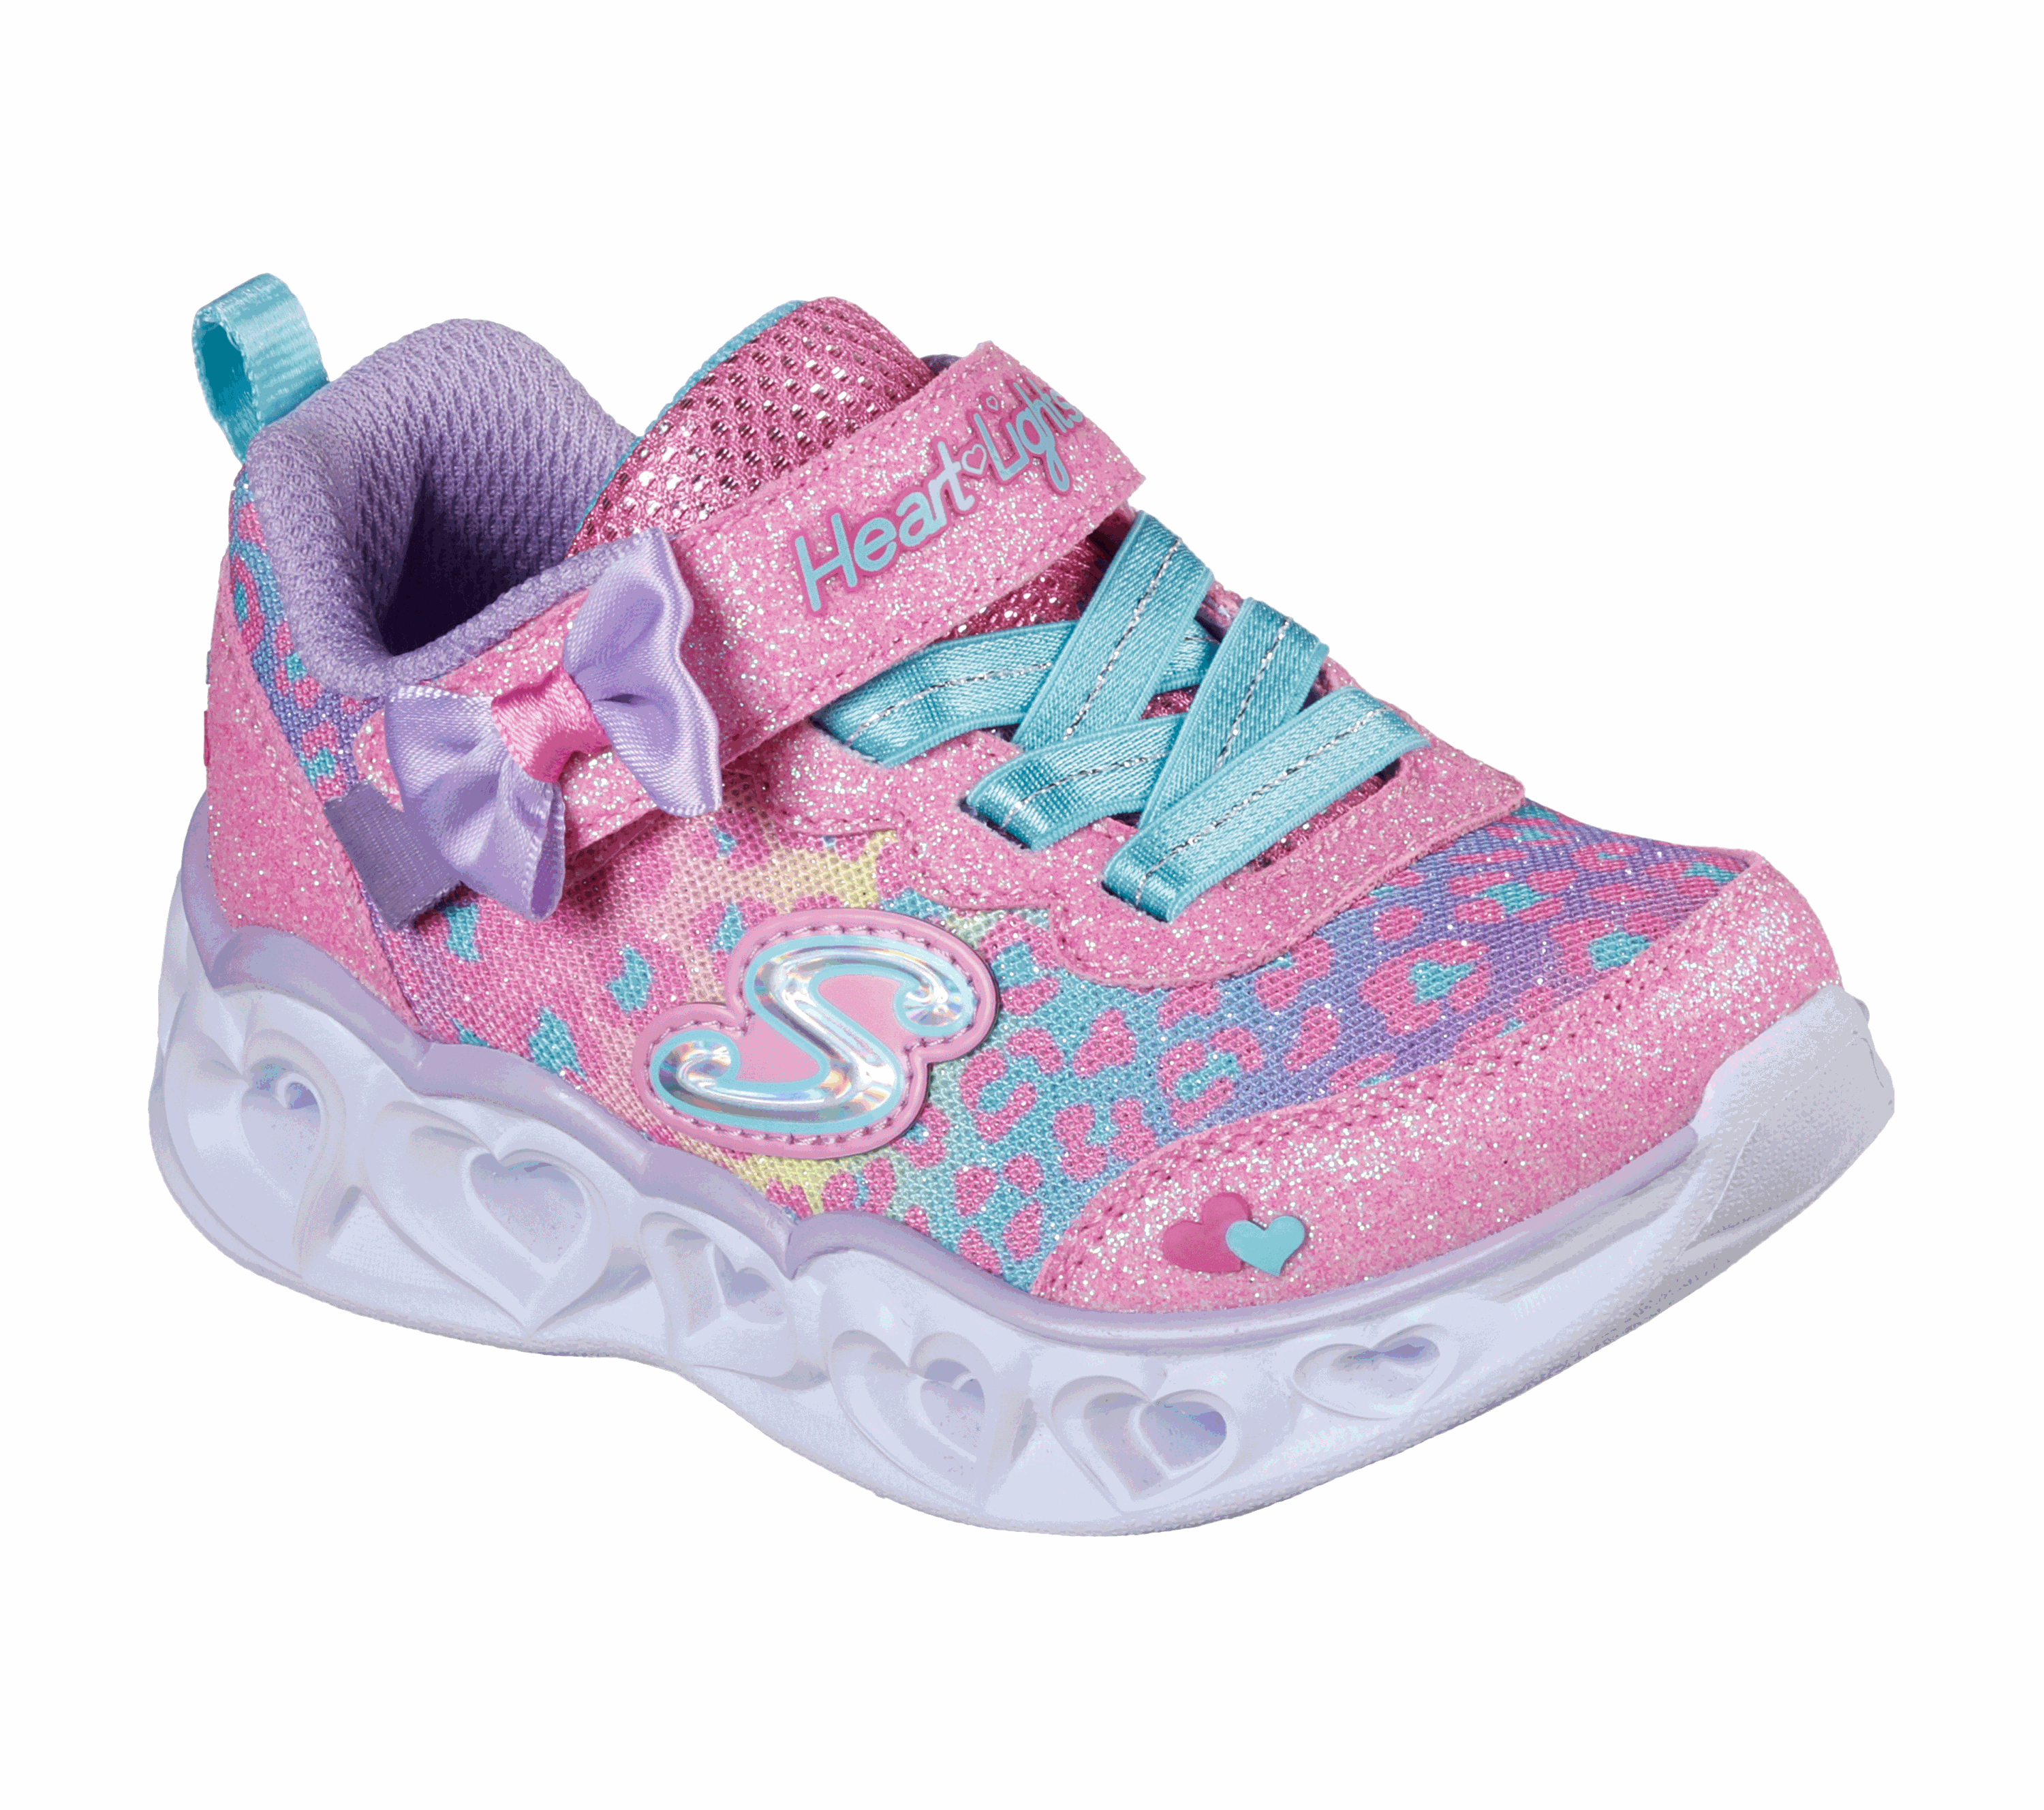 Girls' Toddler \u0026 Infant Shoes | SKECHERS